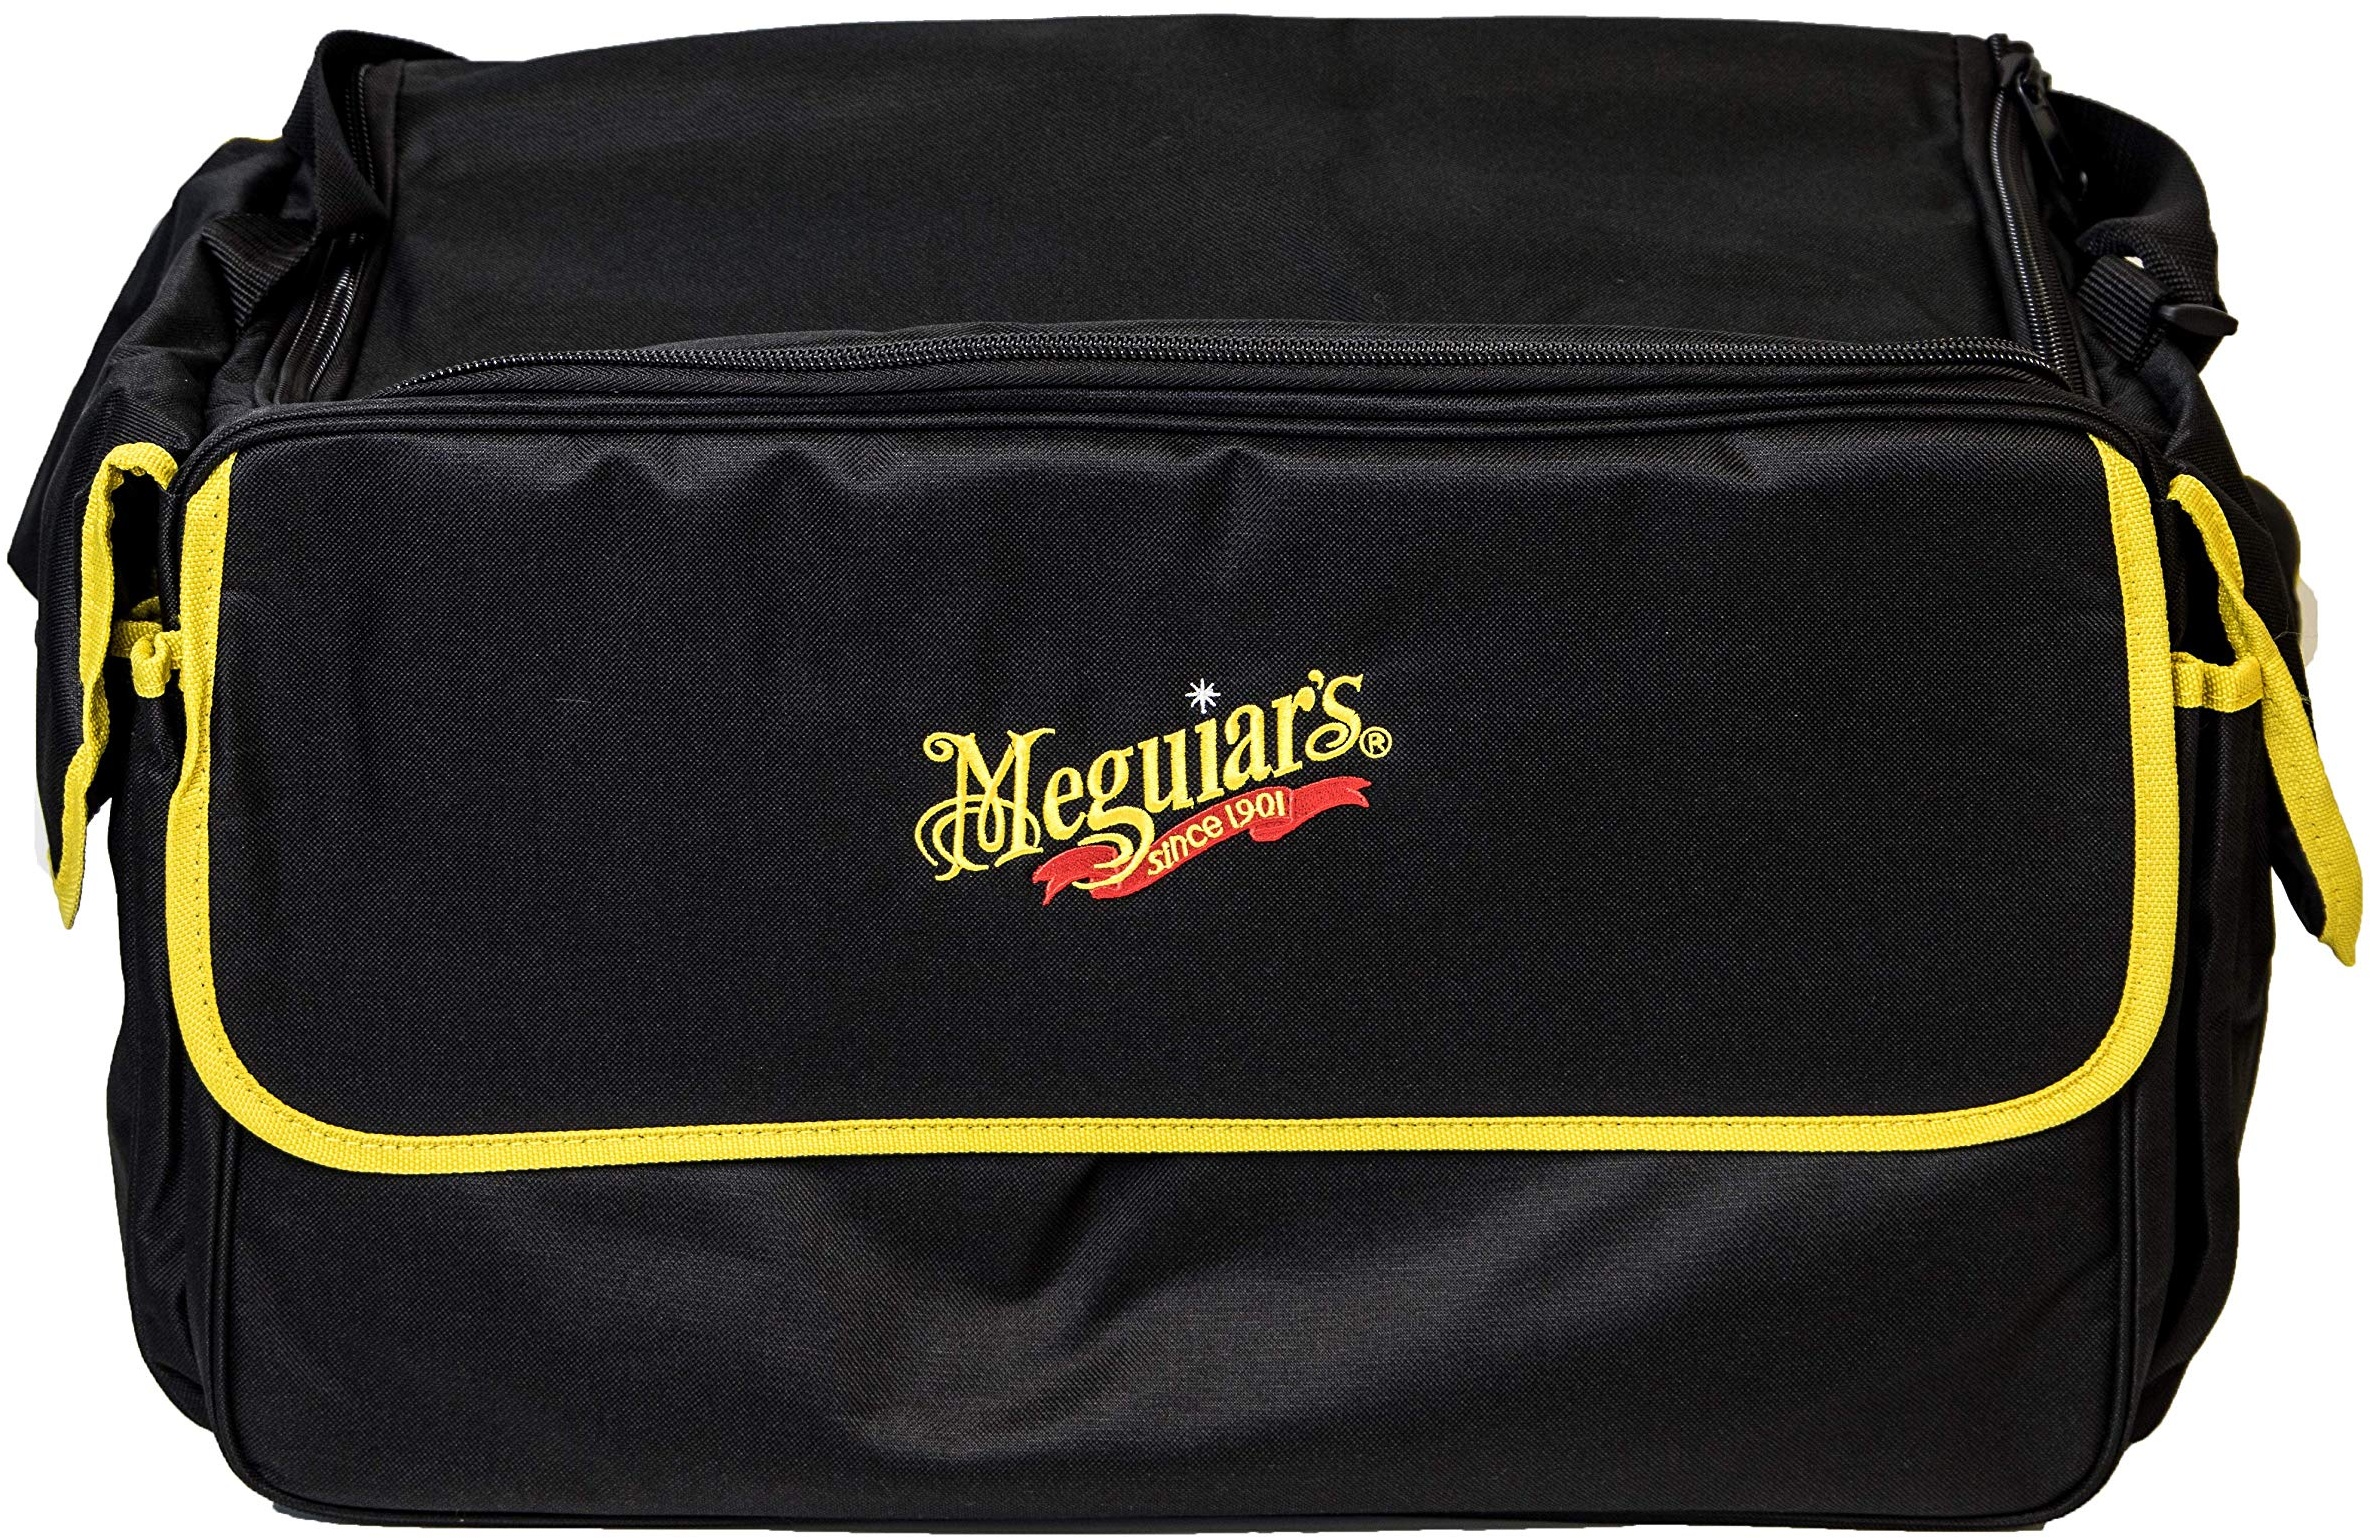 Meguiar's ST025 Kit Bag Large Tragetasche, 60x35x30cm